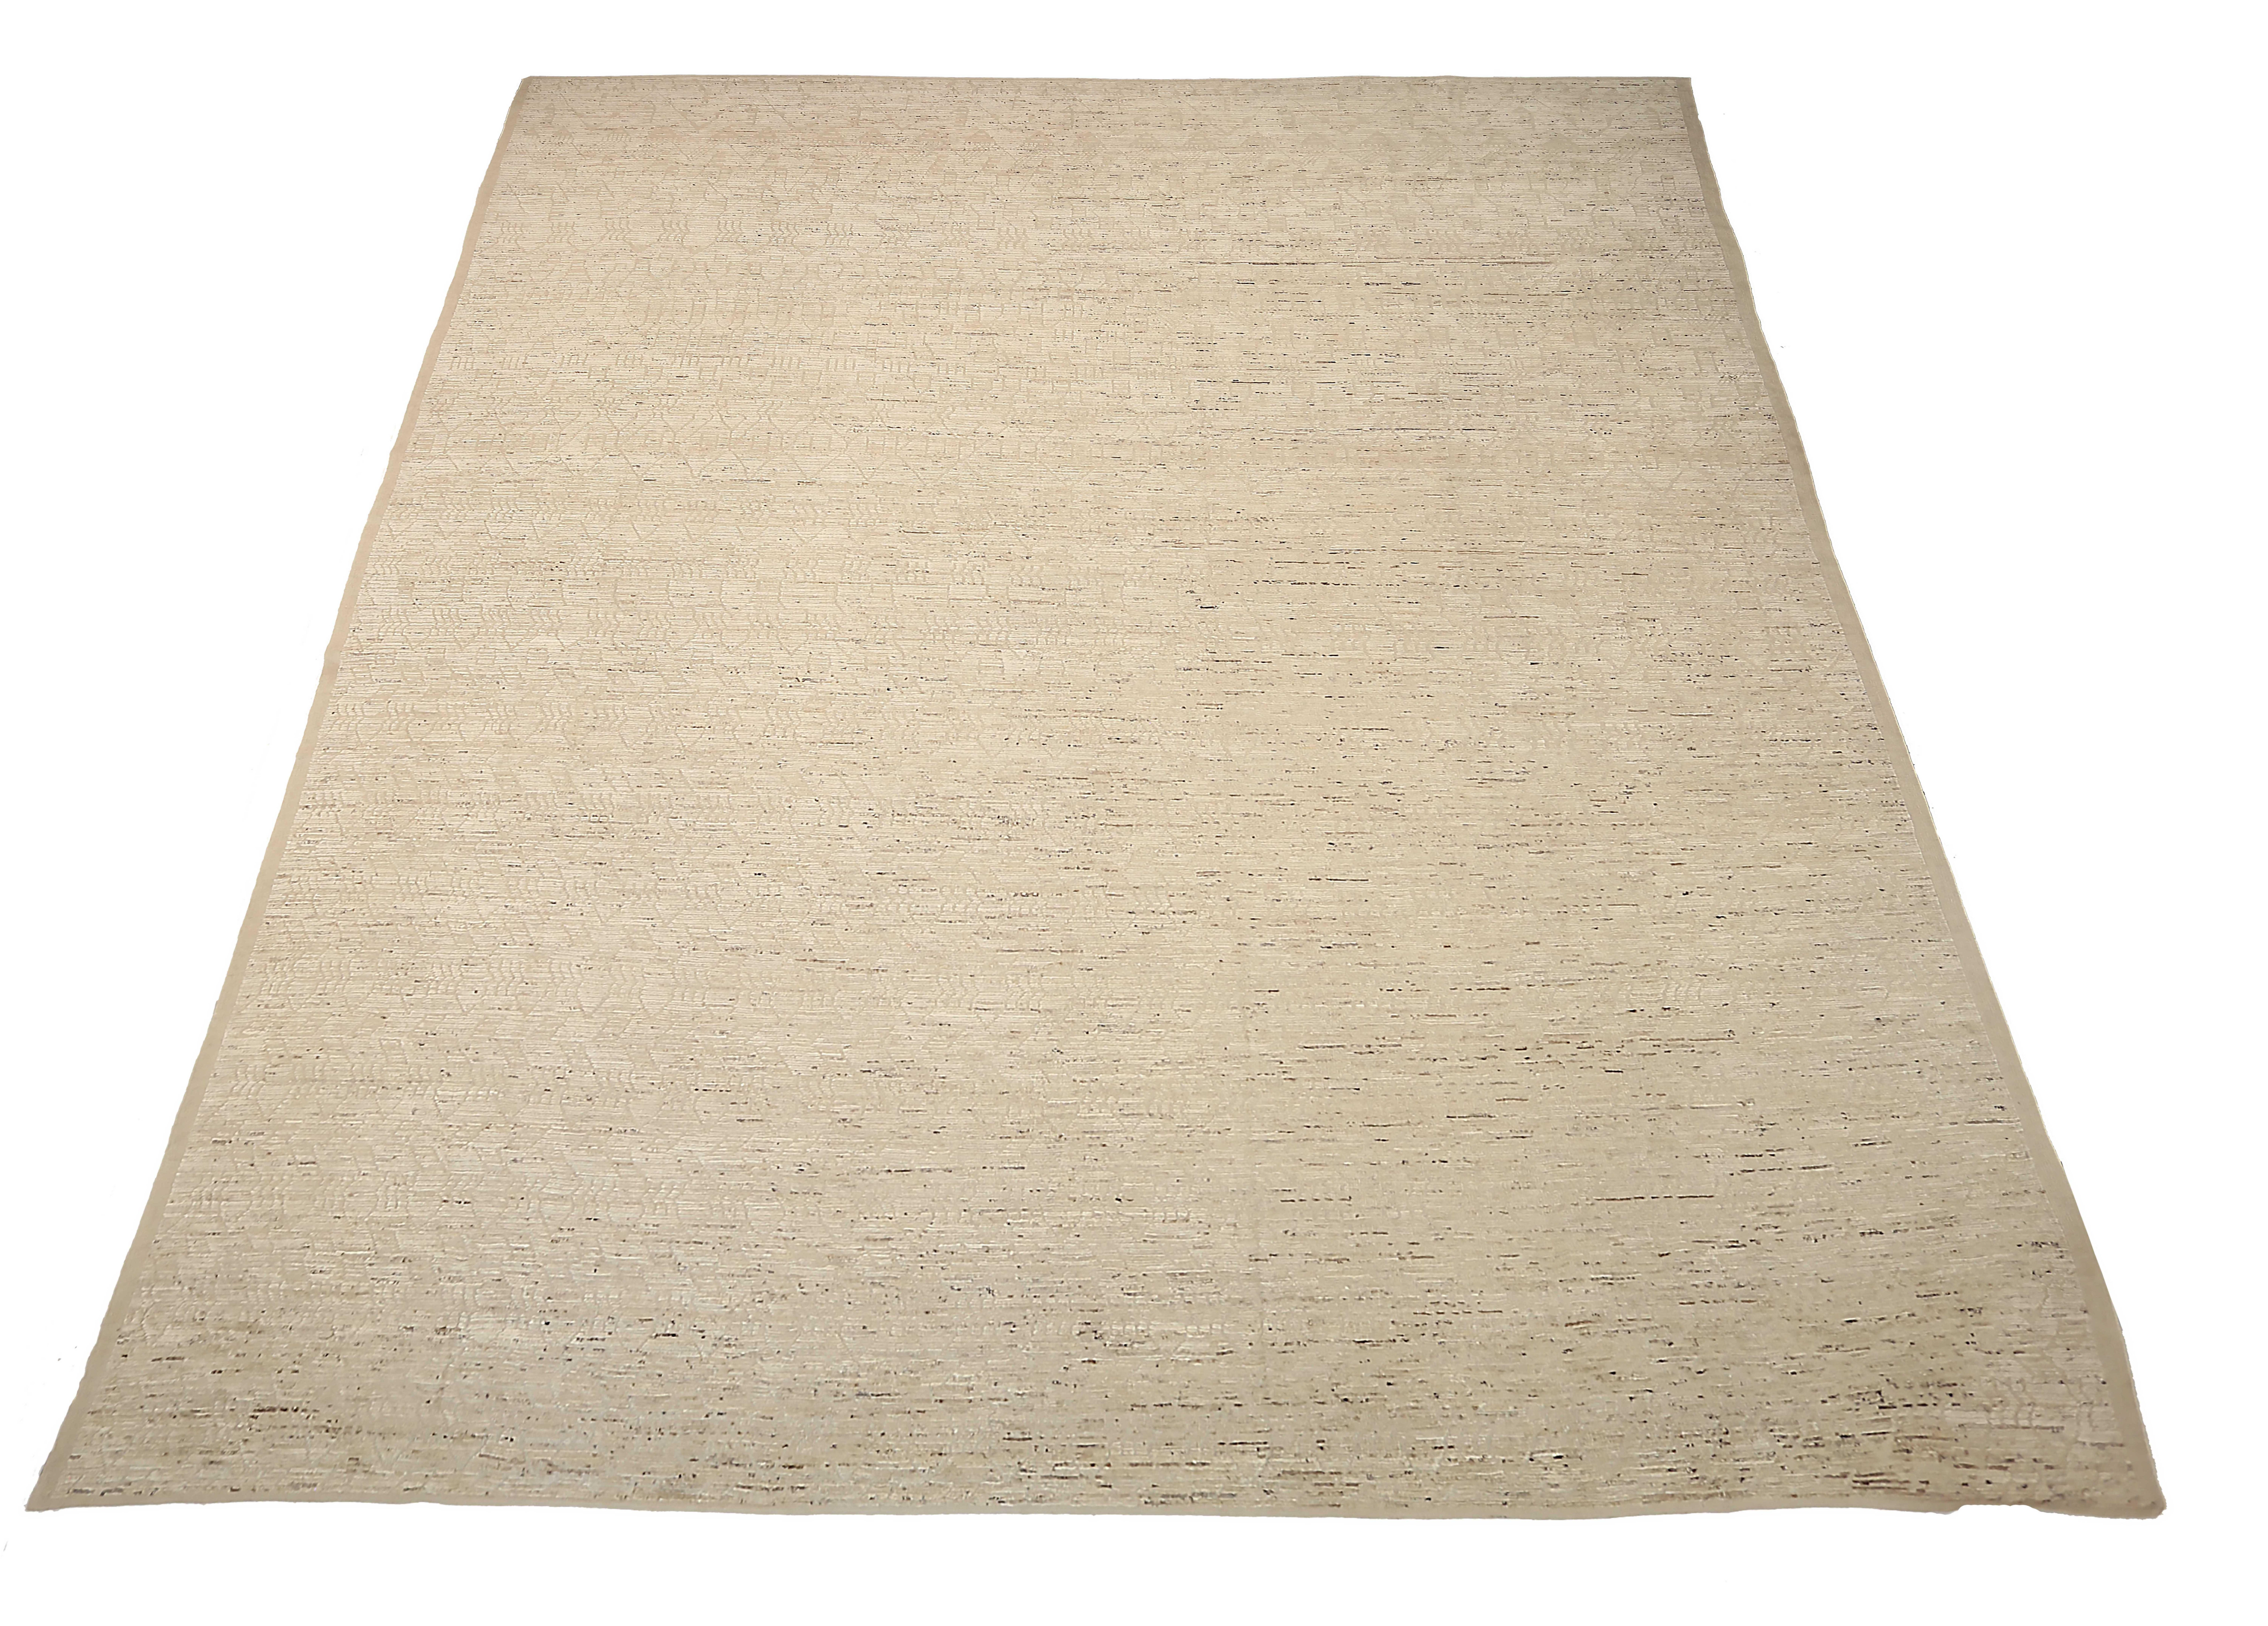 Neuer afghanischer Teppich, handgewebt aus feinster Schafswolle. Es ist mit natürlichen pflanzlichen Farbstoffen gefärbt, die für Menschen und Haustiere sicher sind. Es handelt sich um ein traditionelles marokkanisches Design, das von erfahrenen